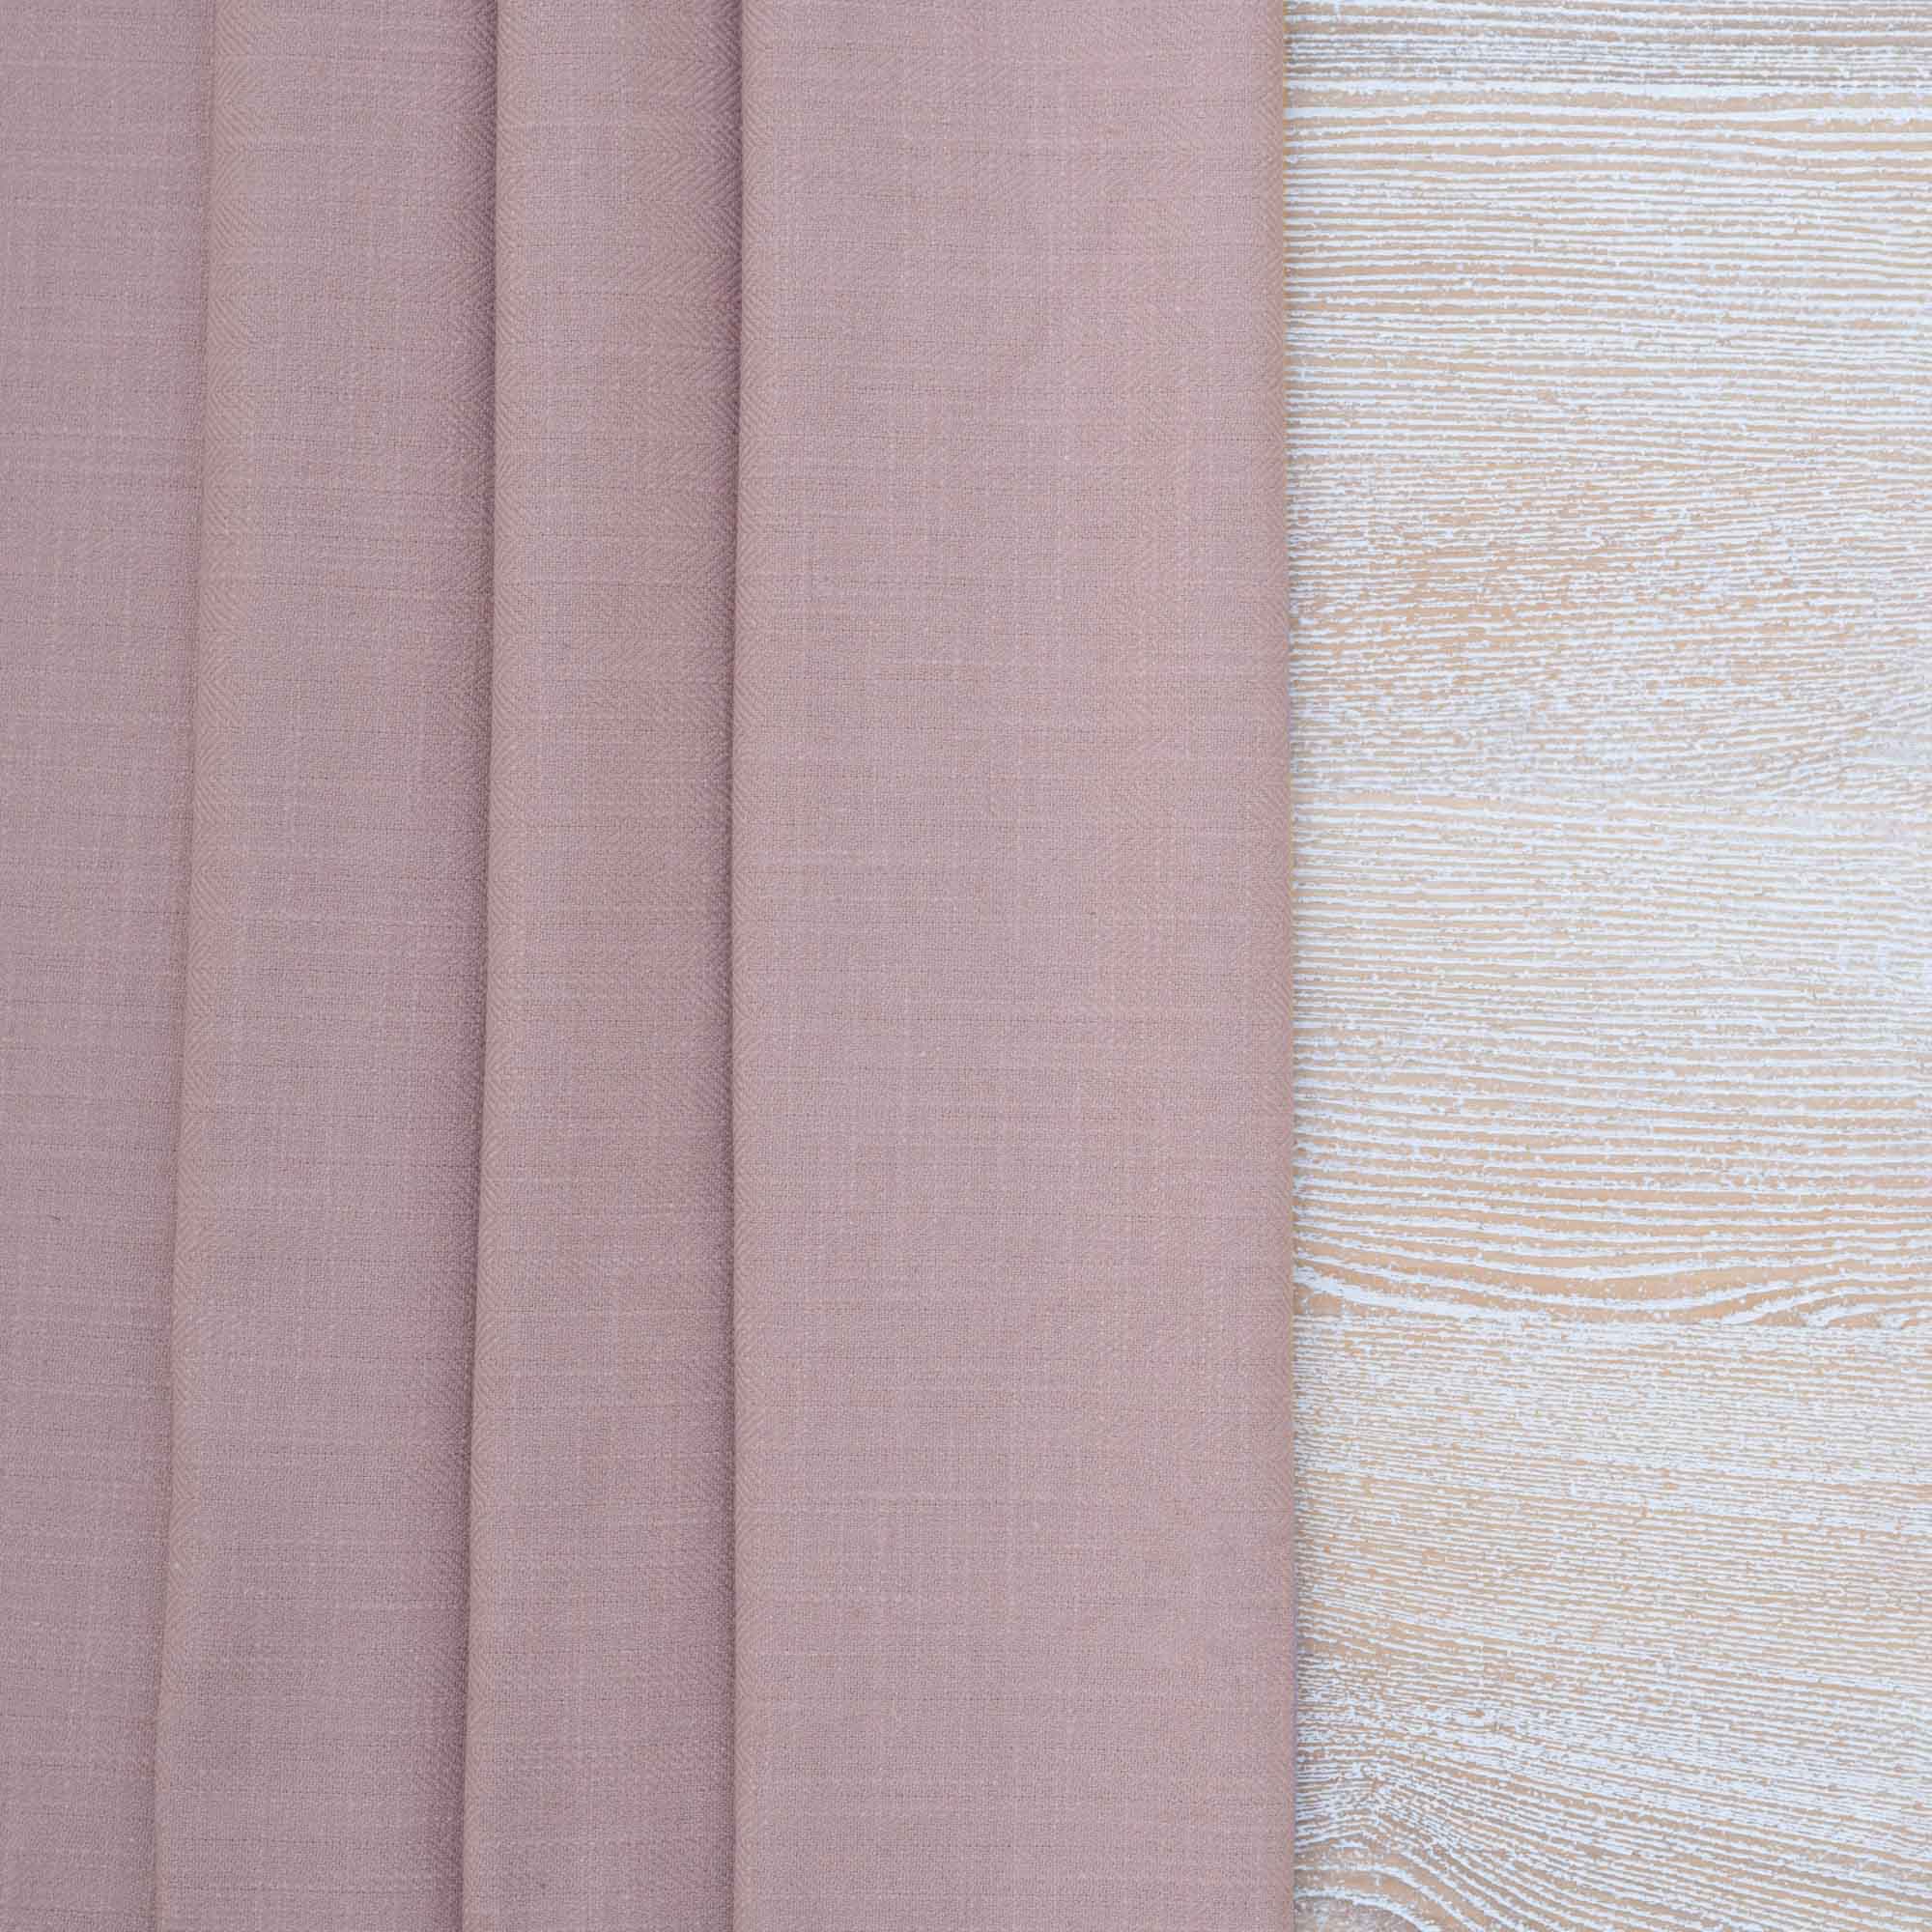 Gir Wood Rose Cotton Linen Blend Fabric